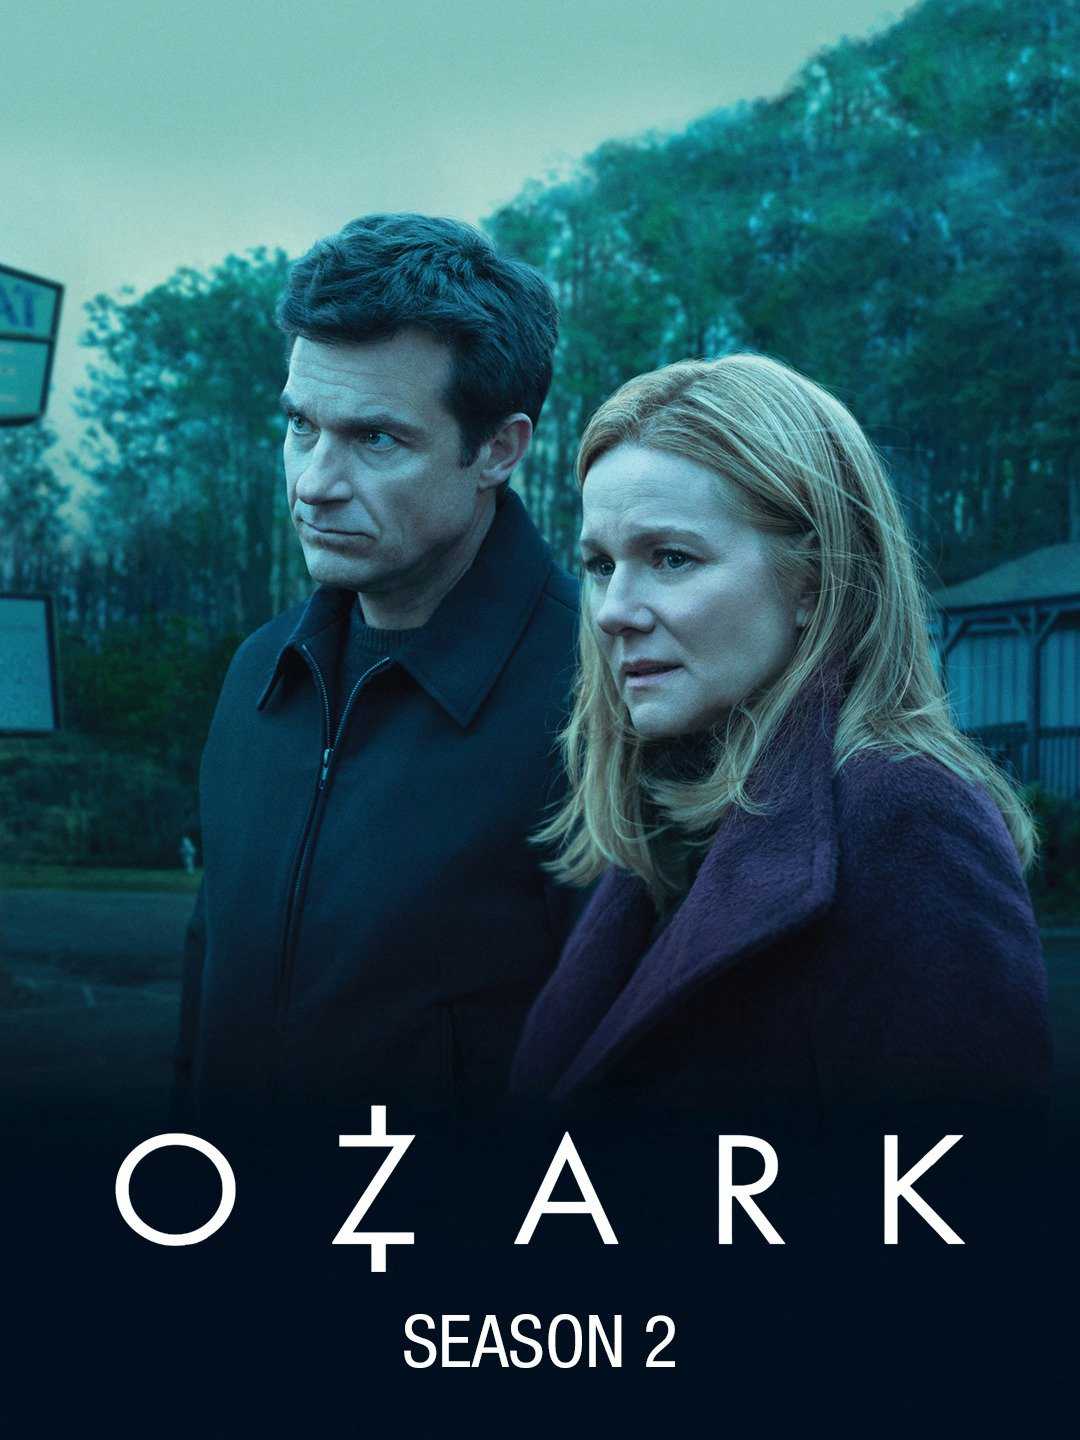 Góc tối đồng tiền (phần 2) - Ozark (season 2)